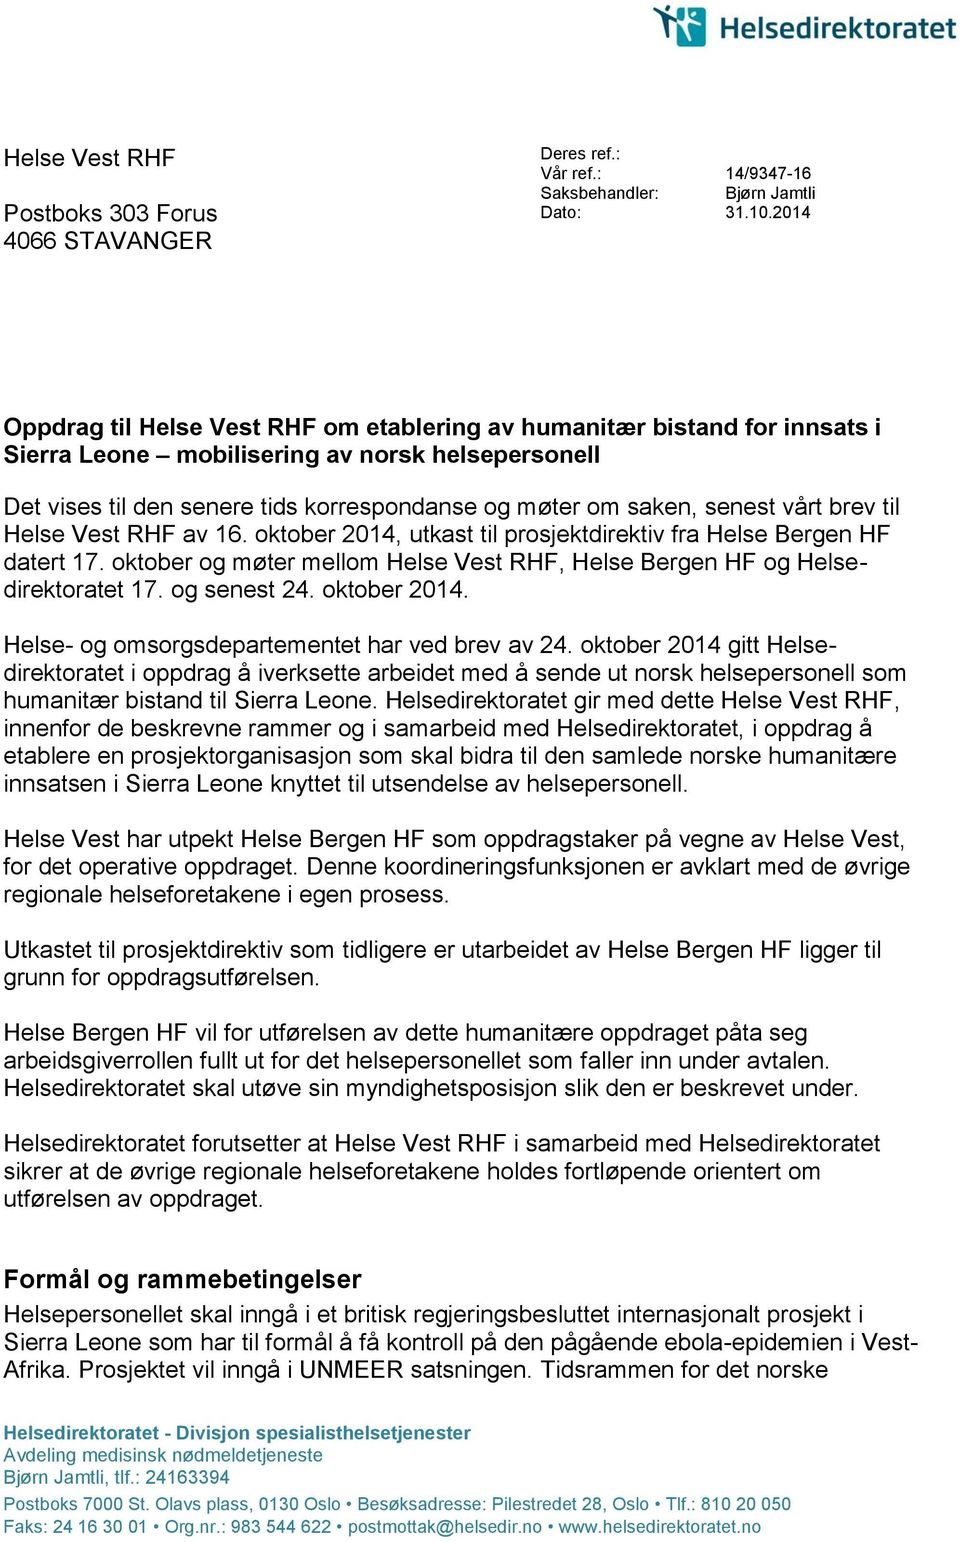 senest vårt brev til Helse Vest RHF av 16. oktober 2014, utkast til prosjektdirektiv fra Helse Bergen HF datert 17. oktober og møter mellom Helse Vest RHF, Helse Bergen HF og Helsedirektoratet 17.